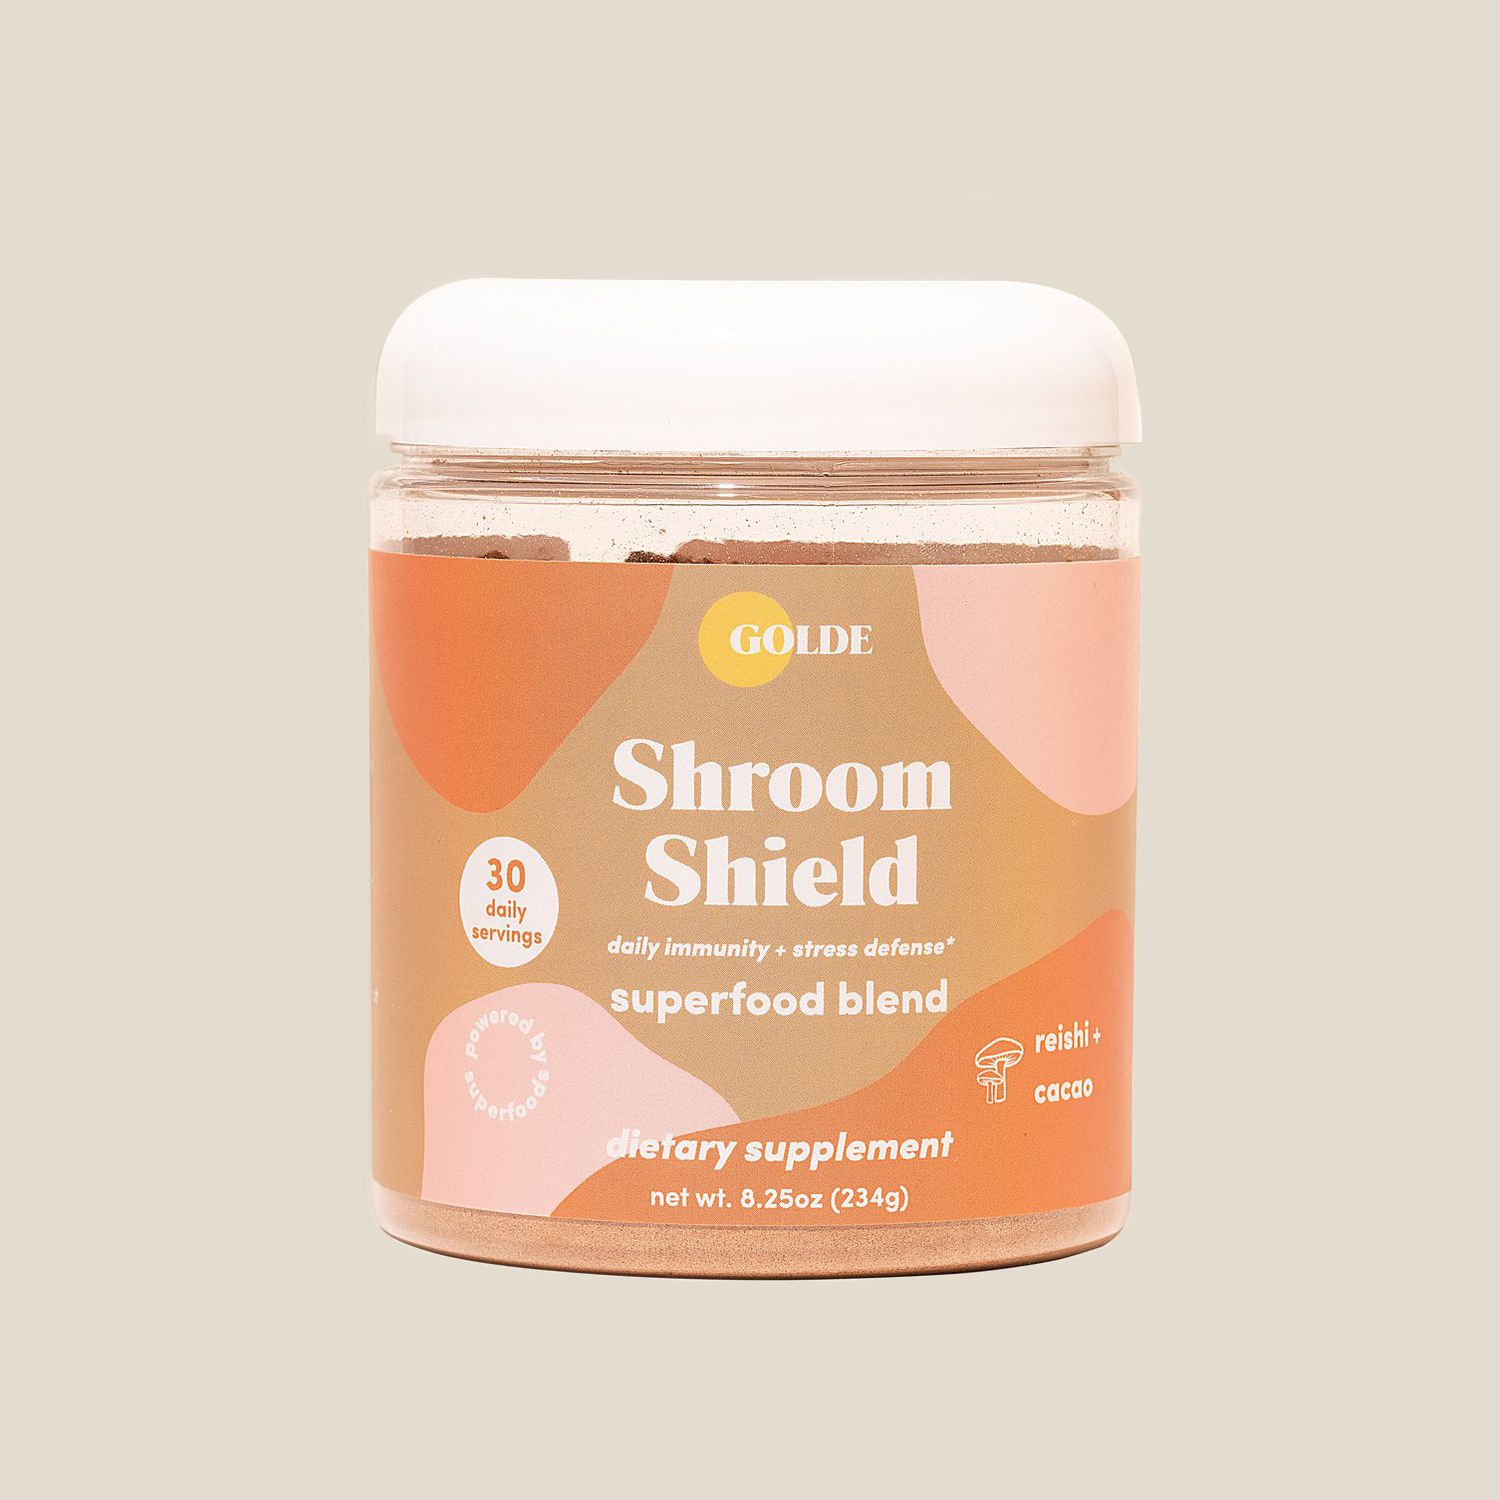 Golde Shroom Shield Superfood Blend